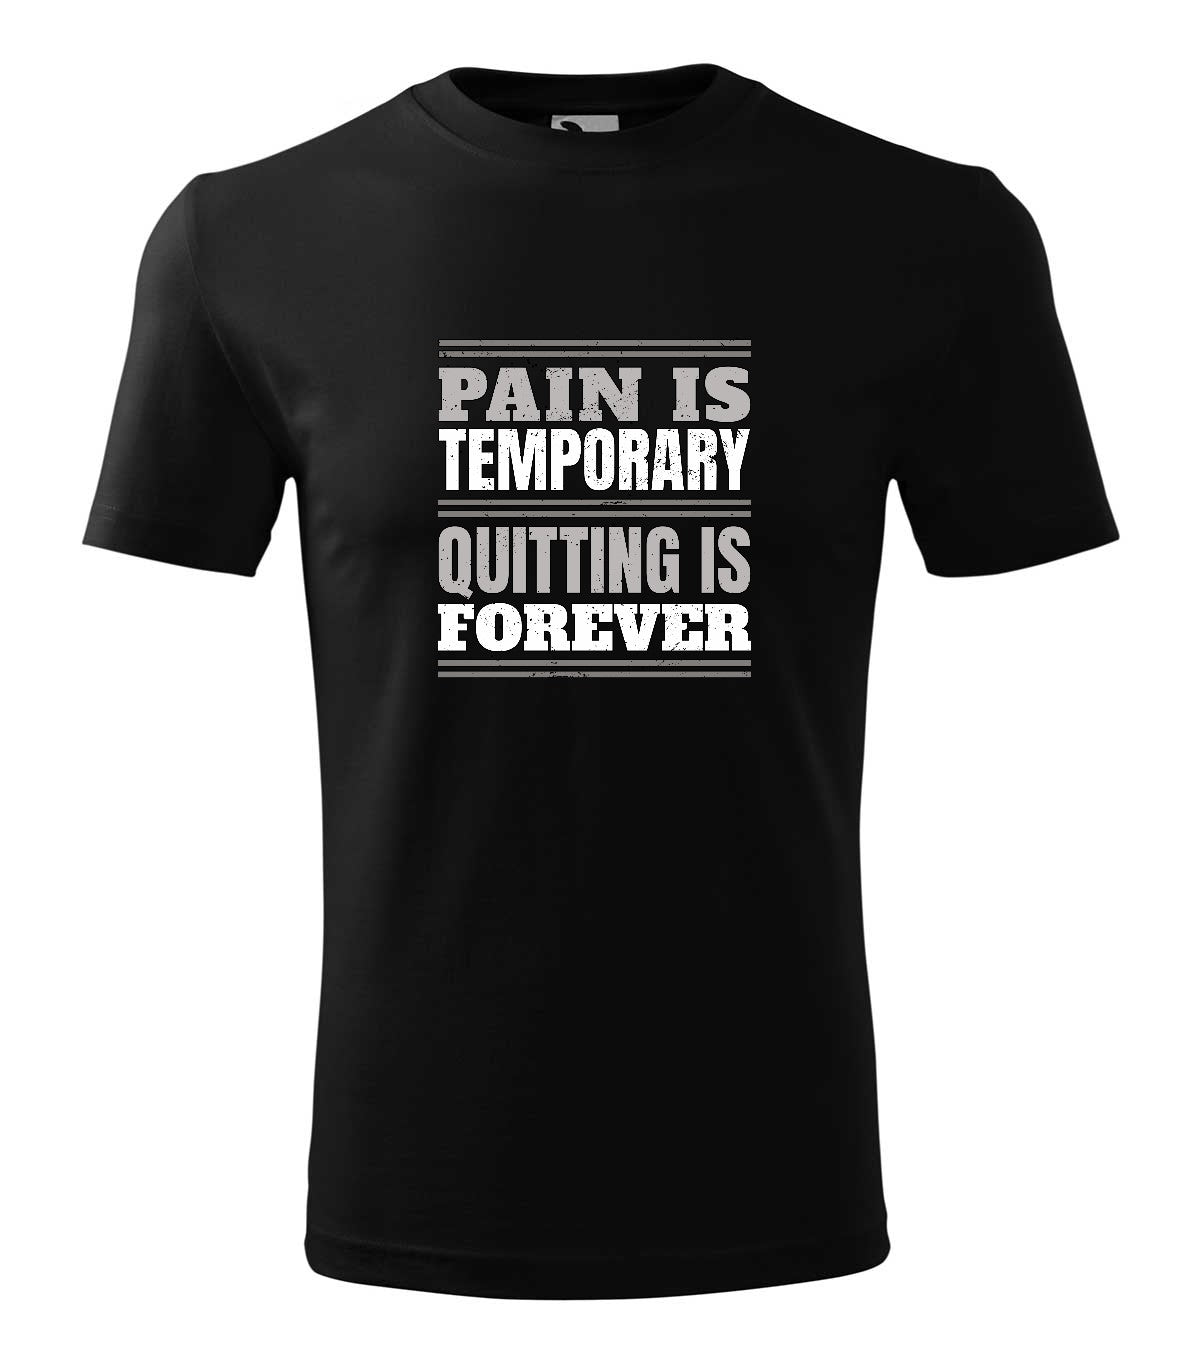 Pain is Temporary férfi póló